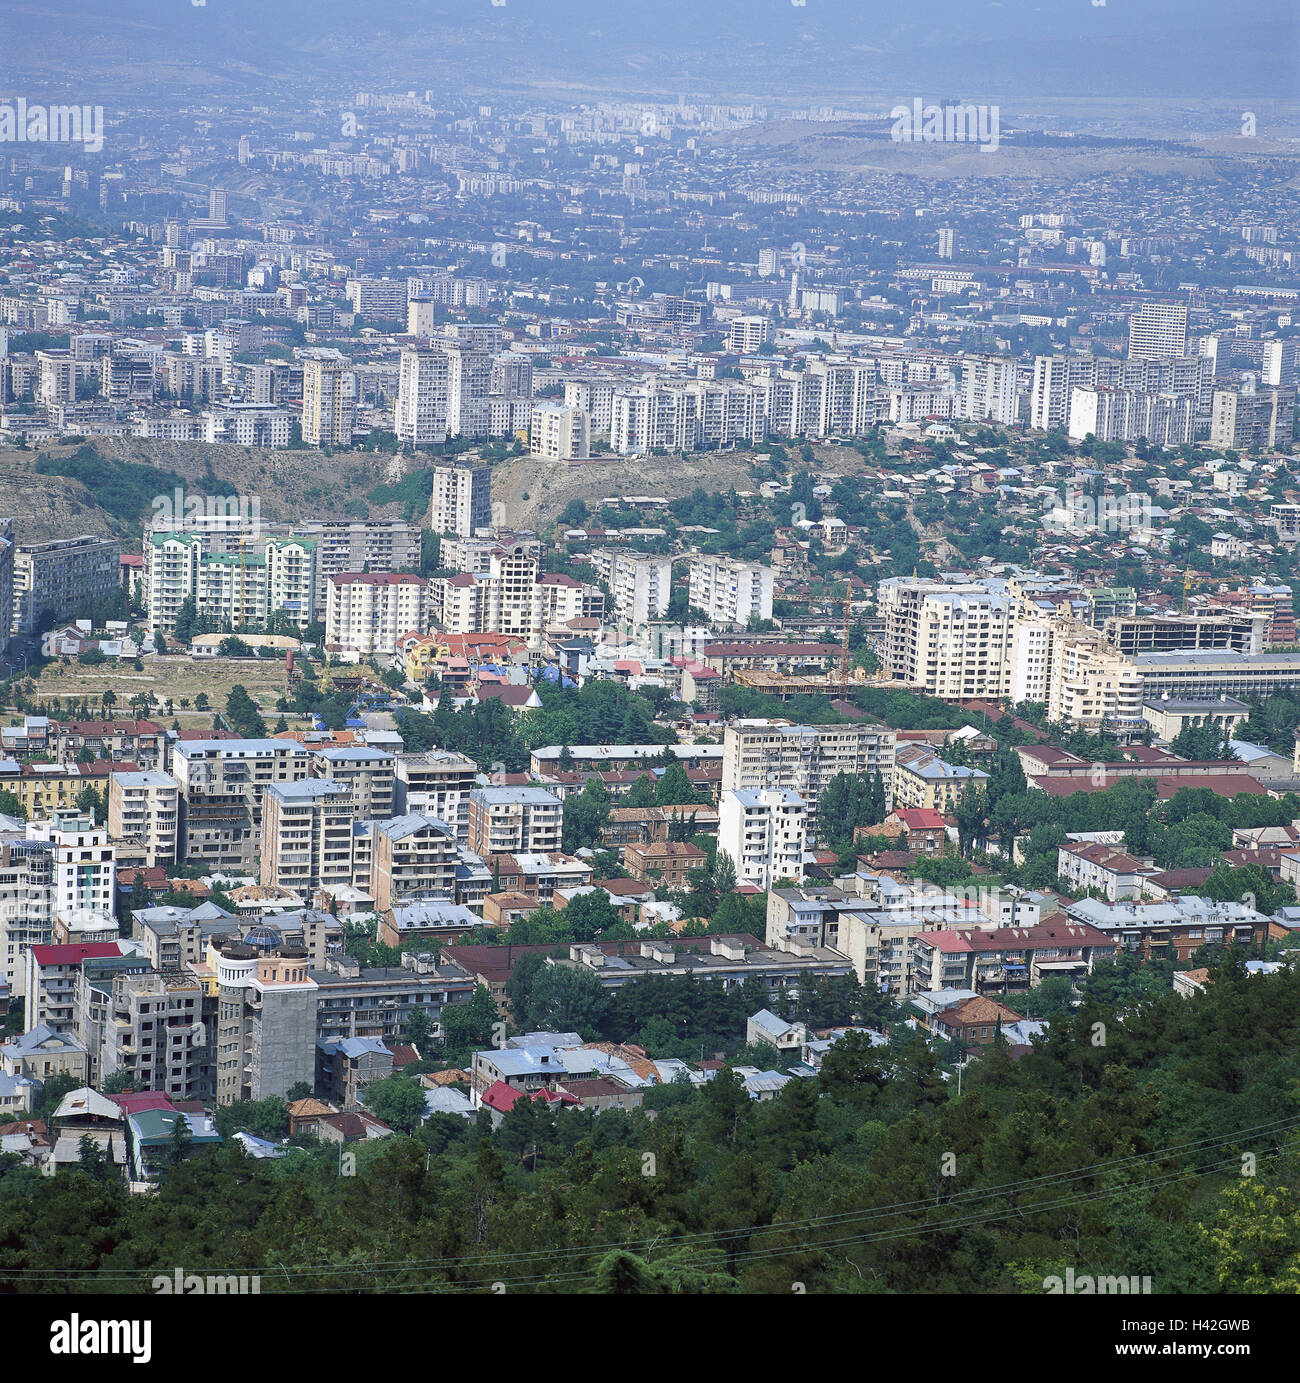 Republic Georgia, Tiflis, town overview, Südwestasien, Transcaucasia, Sakartwelo, Grusinien, Sakartwelos Respublika, Tbilissi, capital, town, city, overview, summer Stock Photo